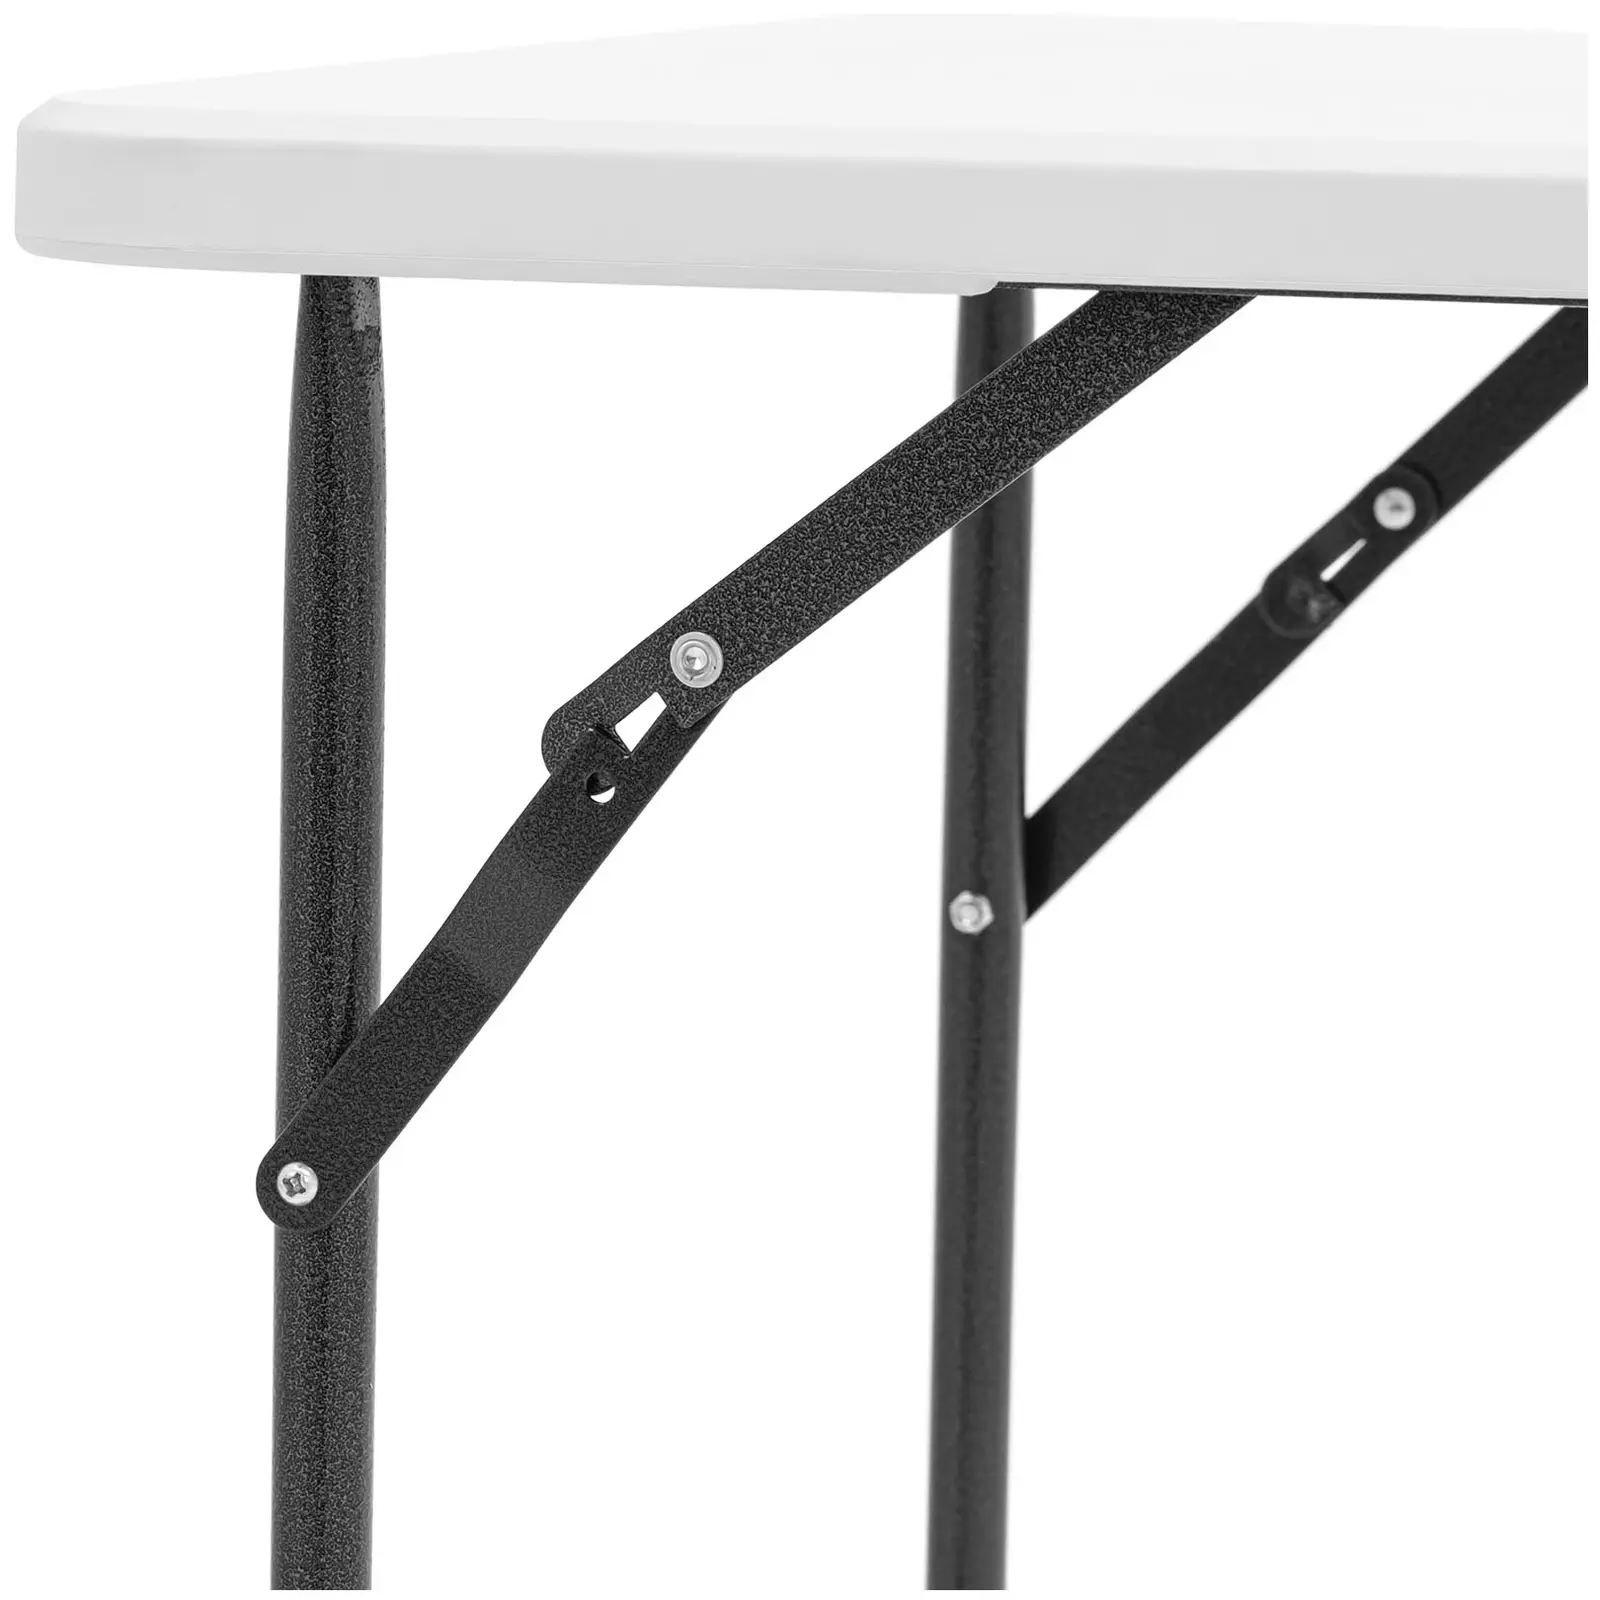 Összecsukható asztal - 120 x 60 x 74,50 cm - 75 kg - kültéri/beltéri - fehér